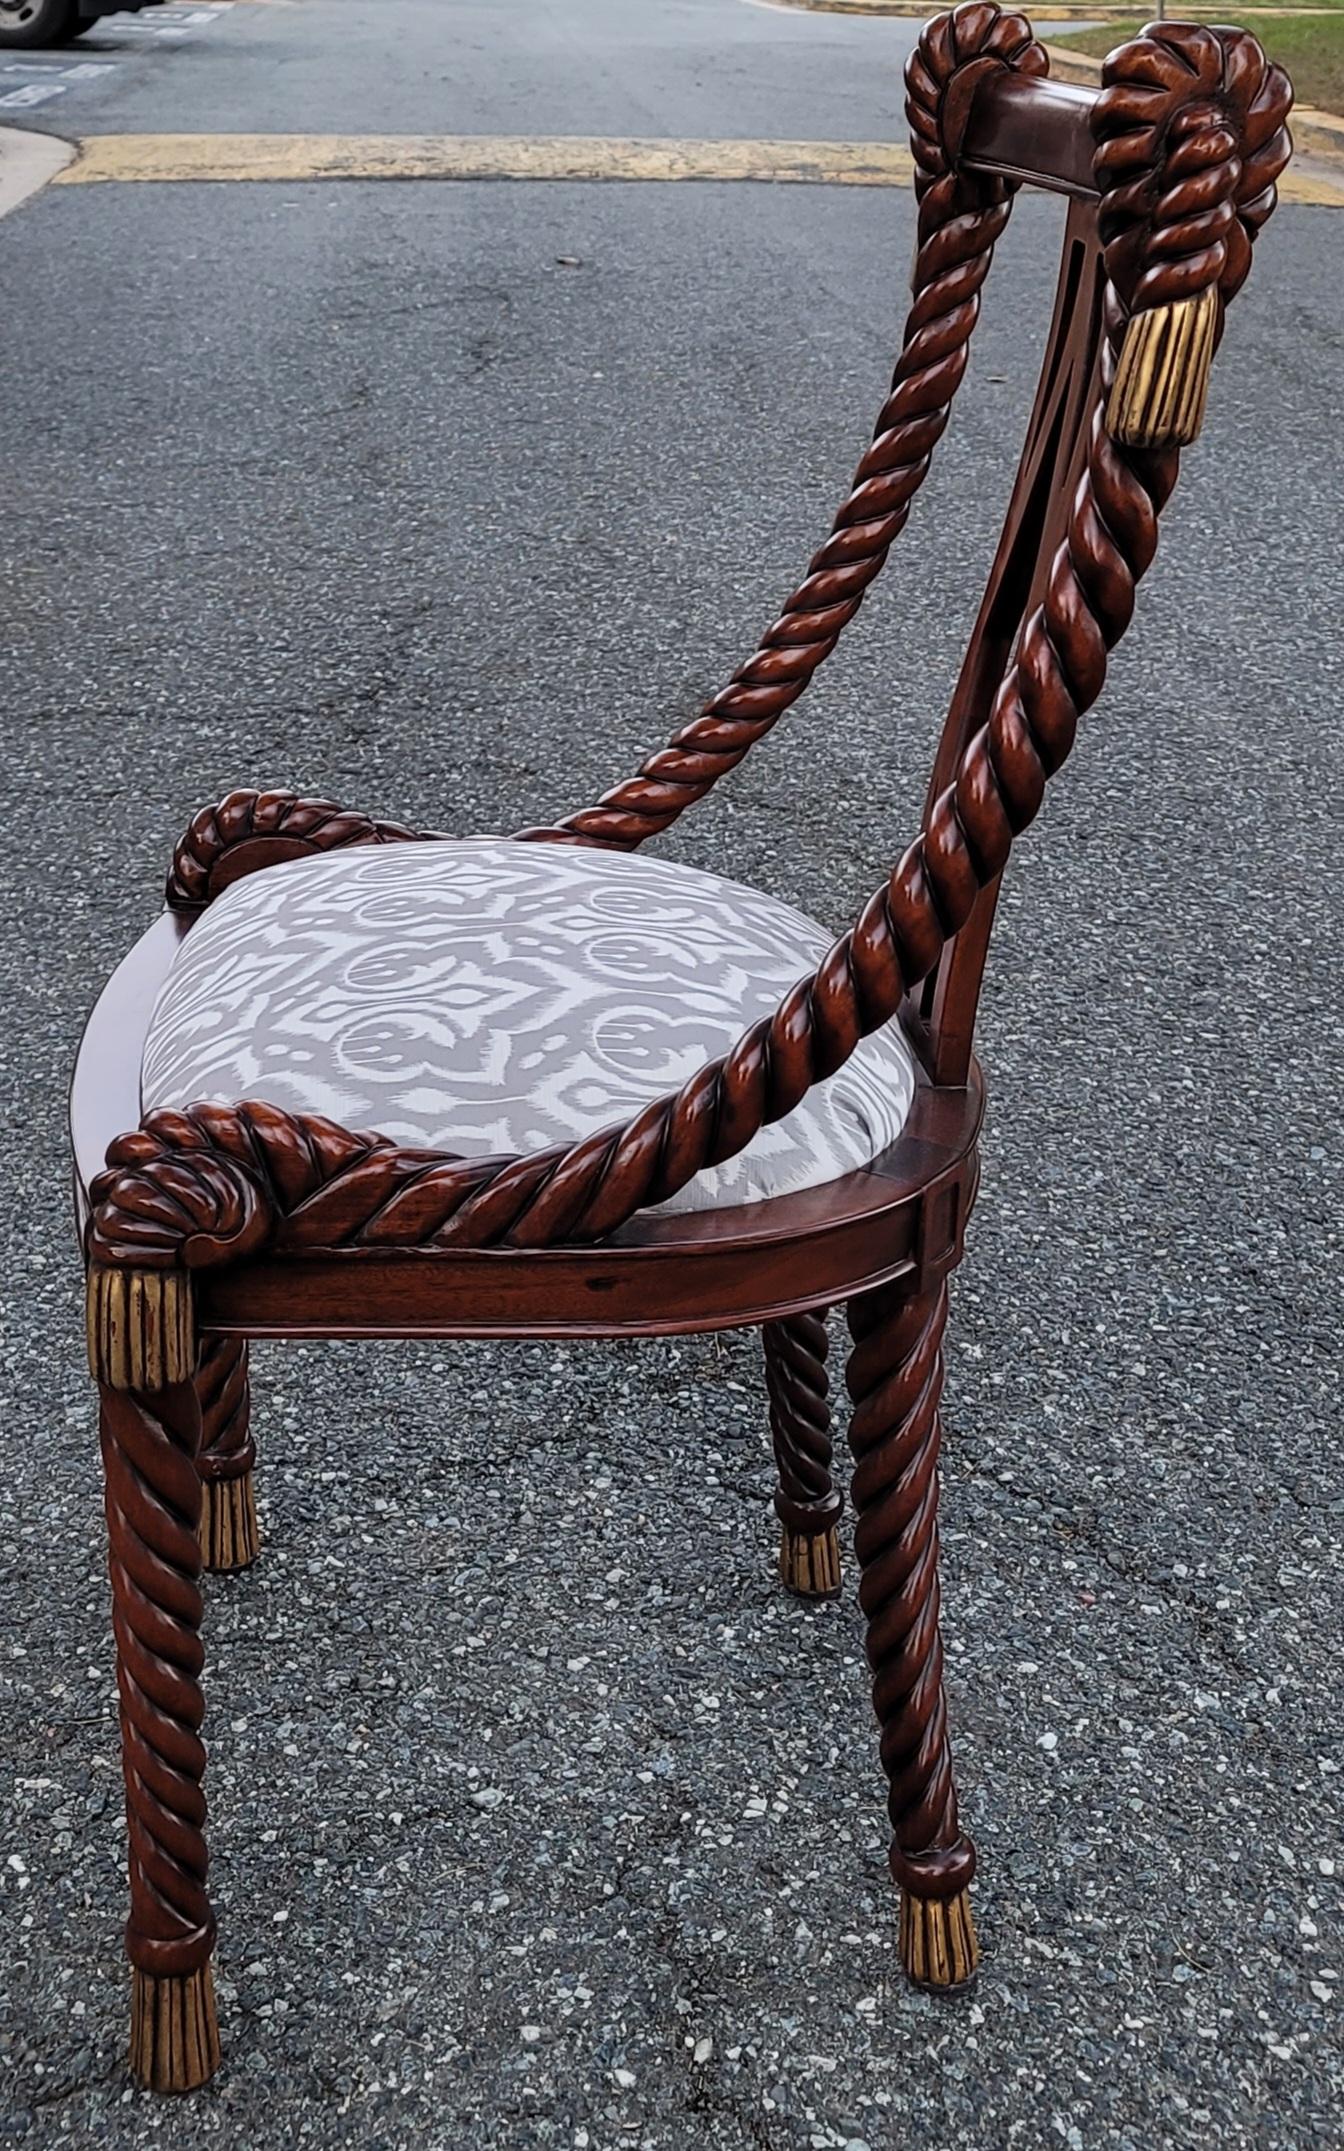 Une paire exquise de grandes chaises d'appoint Biedermeier, sculptées en corde d'orge, en excellent état vintage.
De la collection Victoria. Fabriqué à la main en Australie. Ces chaises sont considérées comme de grandes chaises. Ils mesurent 23